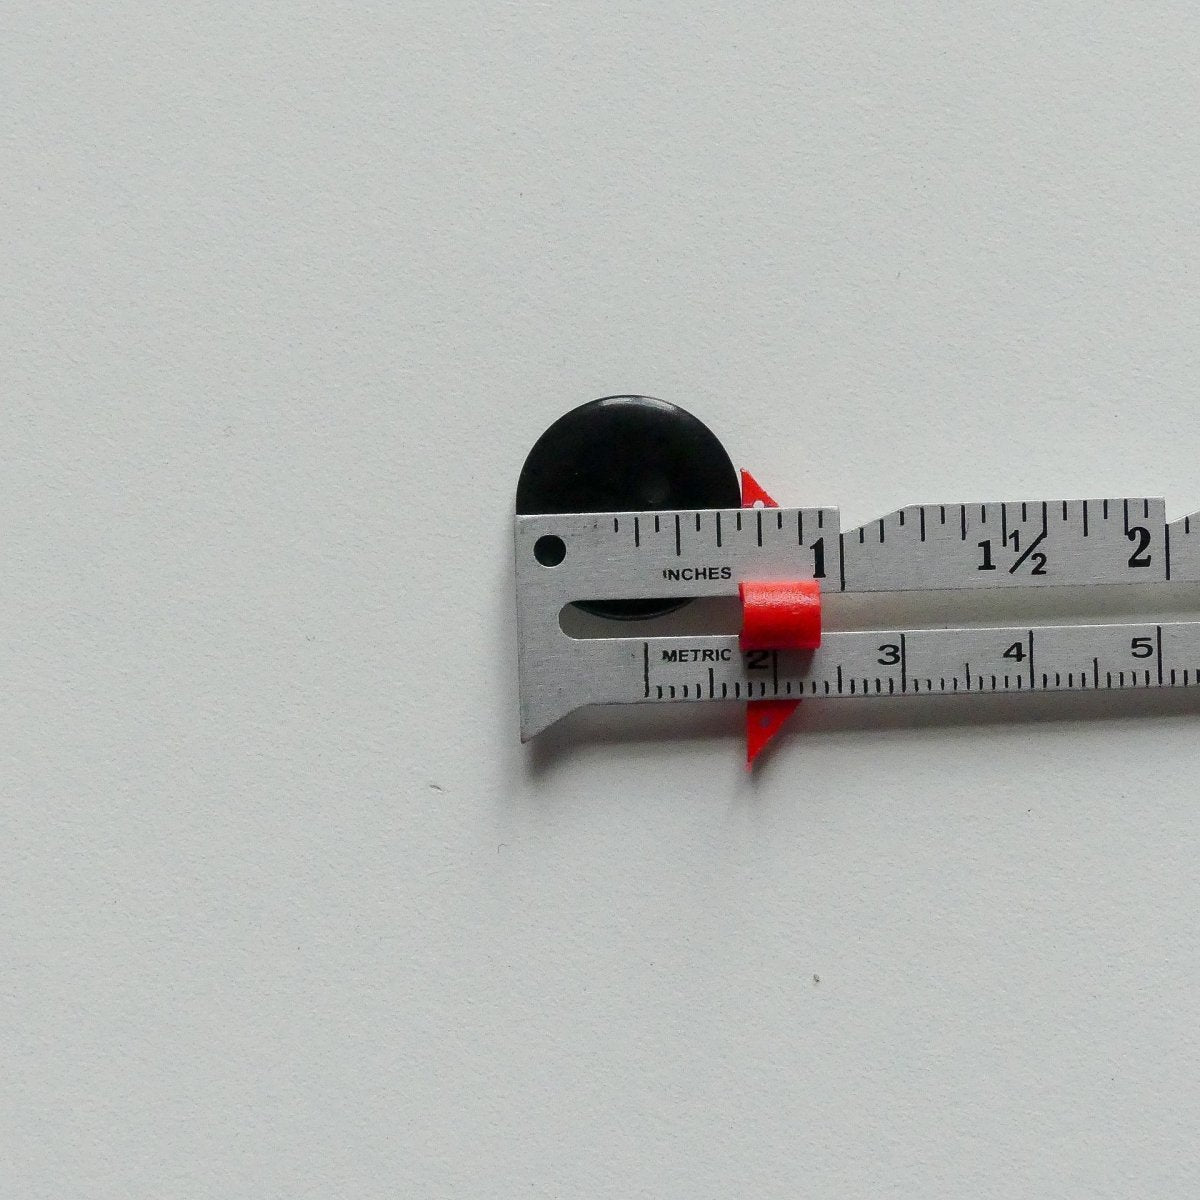 4PCS Sewing Gauge Ruler with Sliding Marker Set Metal Measuring